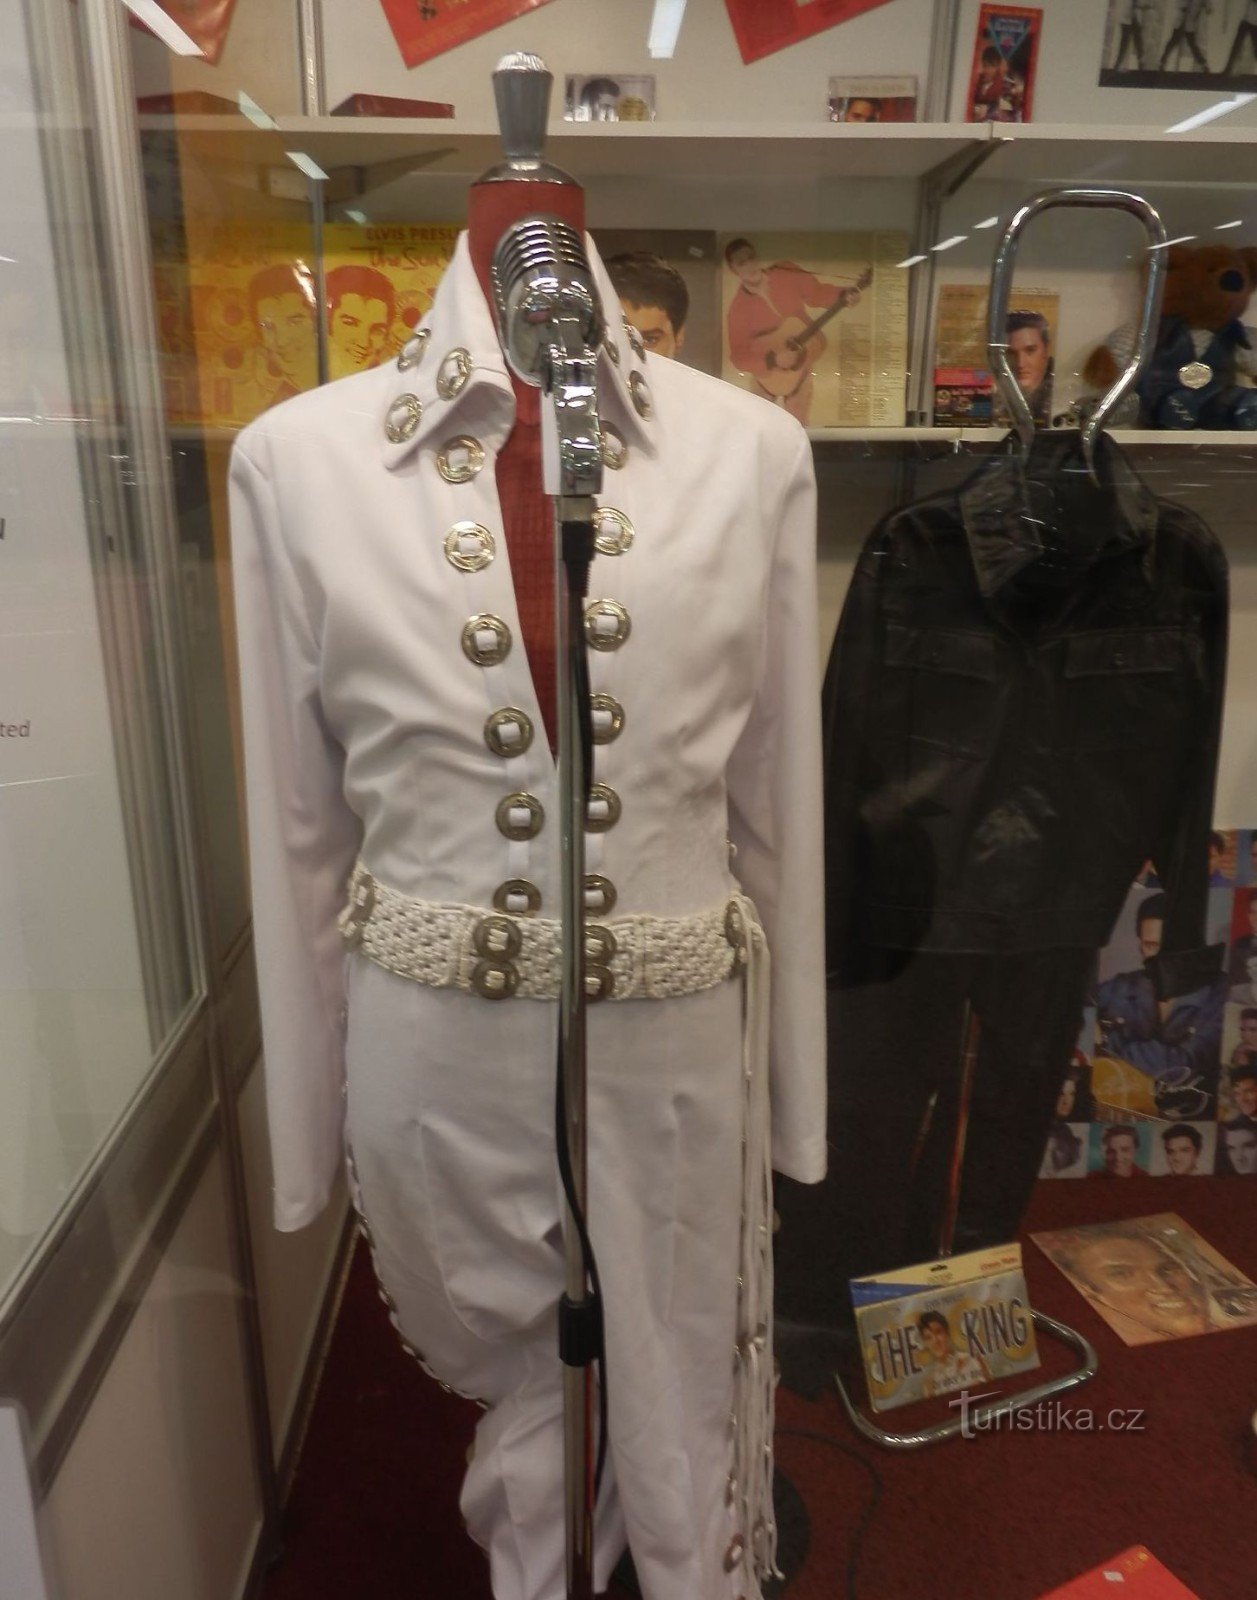 Elvis' famous suit